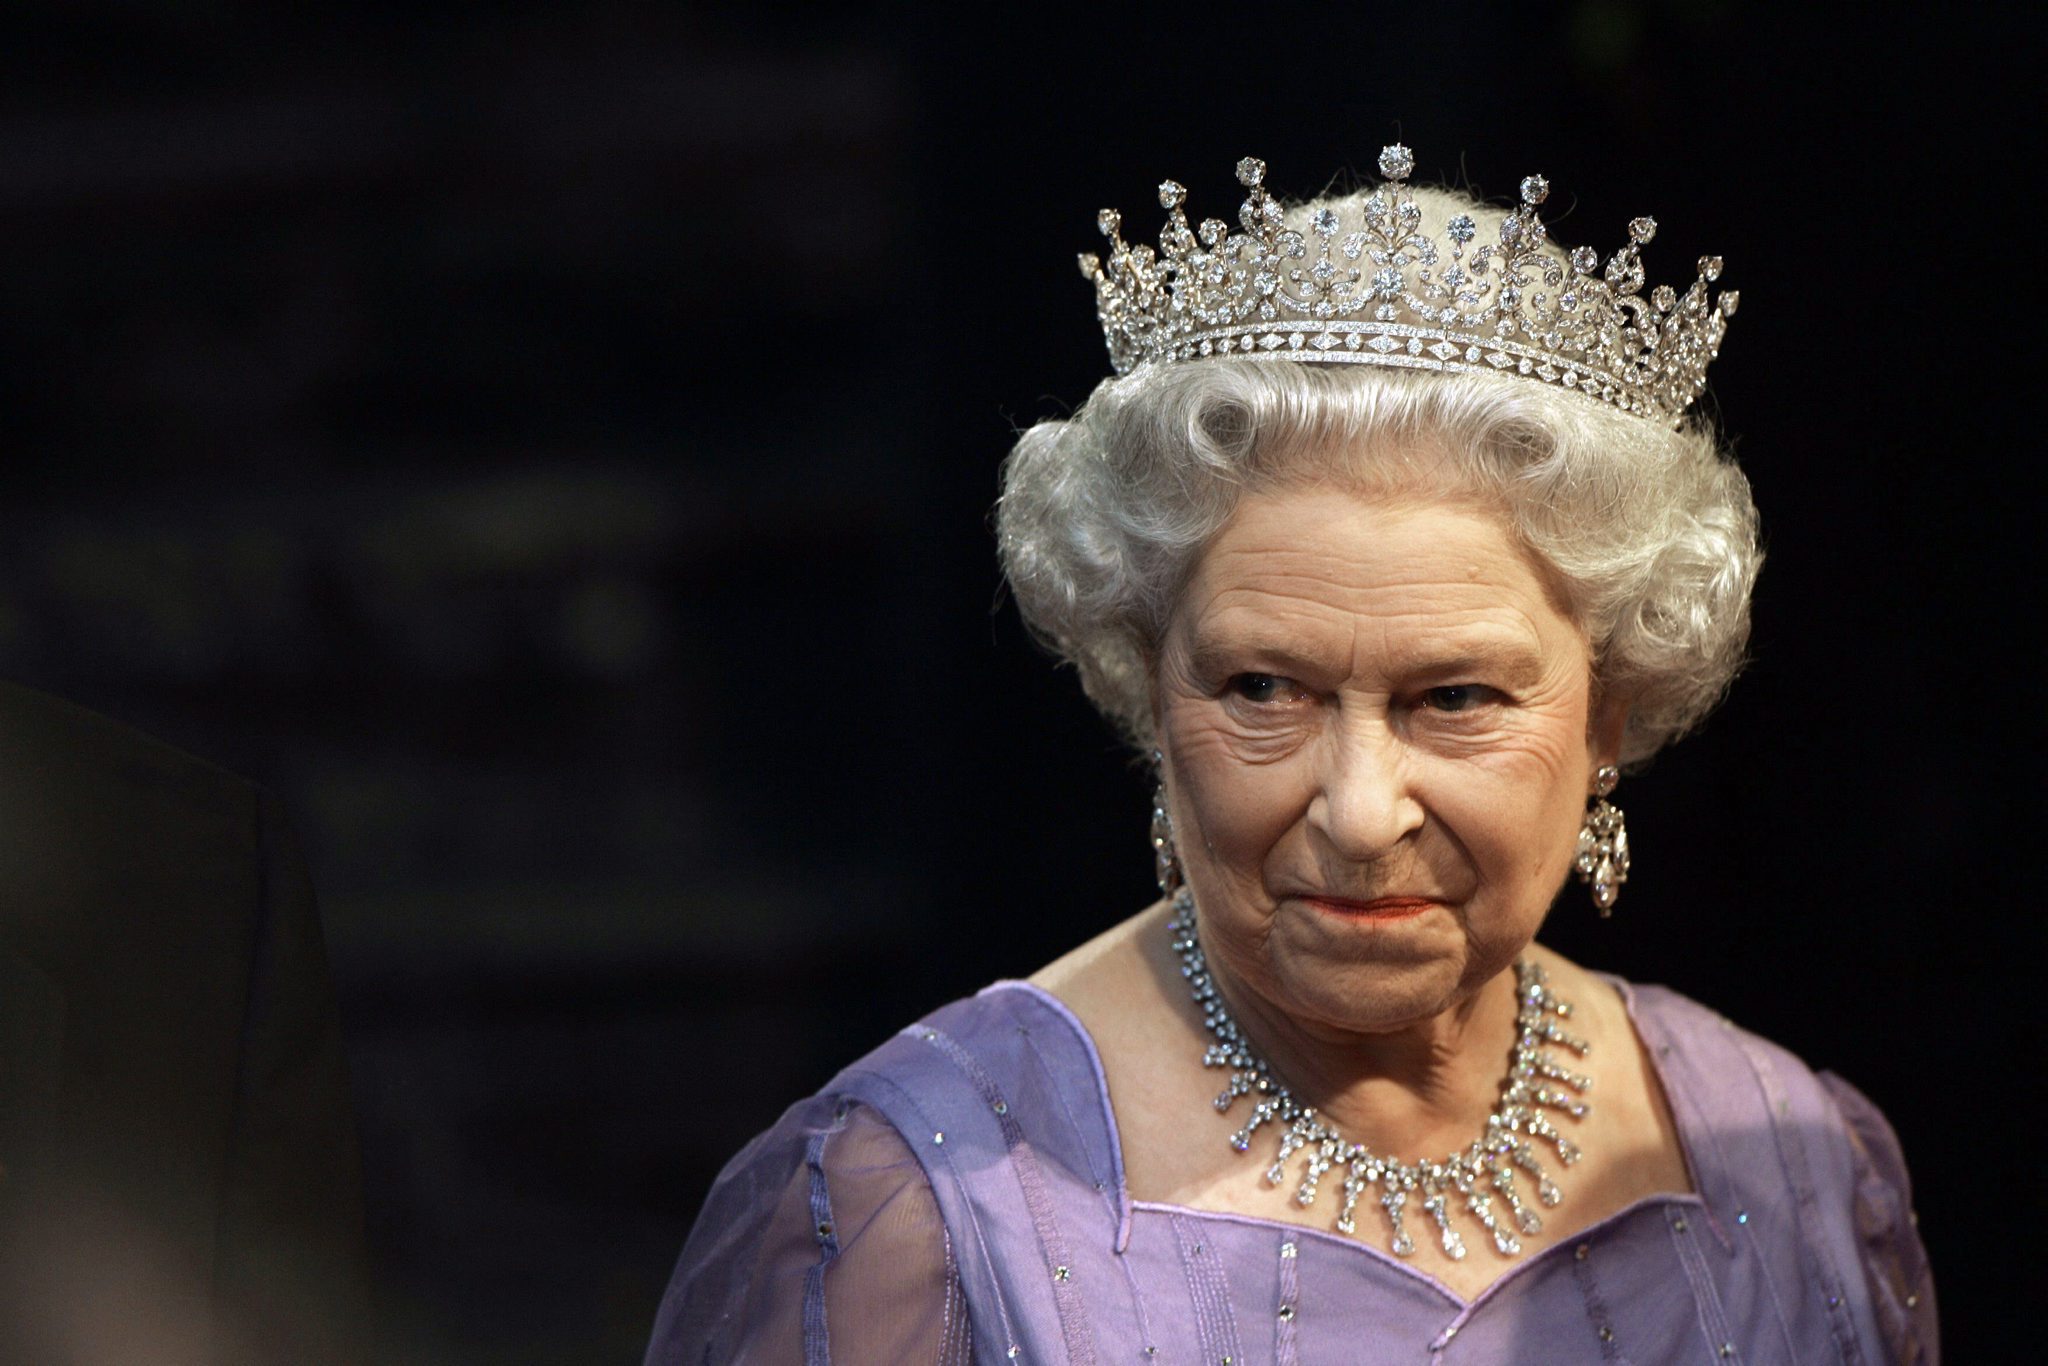 20070729 - LONDRA - EST -  GB: REGINA A BBC, NON TRASMETTETE DOCUMENTARIO SU DI ME. MAIL ON SUNDAY, GIA' SI SONO DOVUTI SCUSARE PER TRAILER - Un'immagine d'archivio della  regina Elisabetta II . Scontro aperto tra Buckingham Palace e la Bbc sulla messa in onda di un documentario sulla 
regina Elisabetta, un film che la sovrana non vorrebbe fosse visto dal pubblico: lo rivela il Mail on Sunday ricordando che il documentario e' quello preceduto da un 'trailer' in cui l'emittente aveva fatto apparire Elisabetta furiosa che se ne andava da un set fotografico con Annie Leibovitz (cosa mai successa), dovendo poi scusarsi con la regina per il montaggio che aveva dato quell'impressione.
ANSA/ARCHIVIO/MICHAEL KAPPELER / BGG